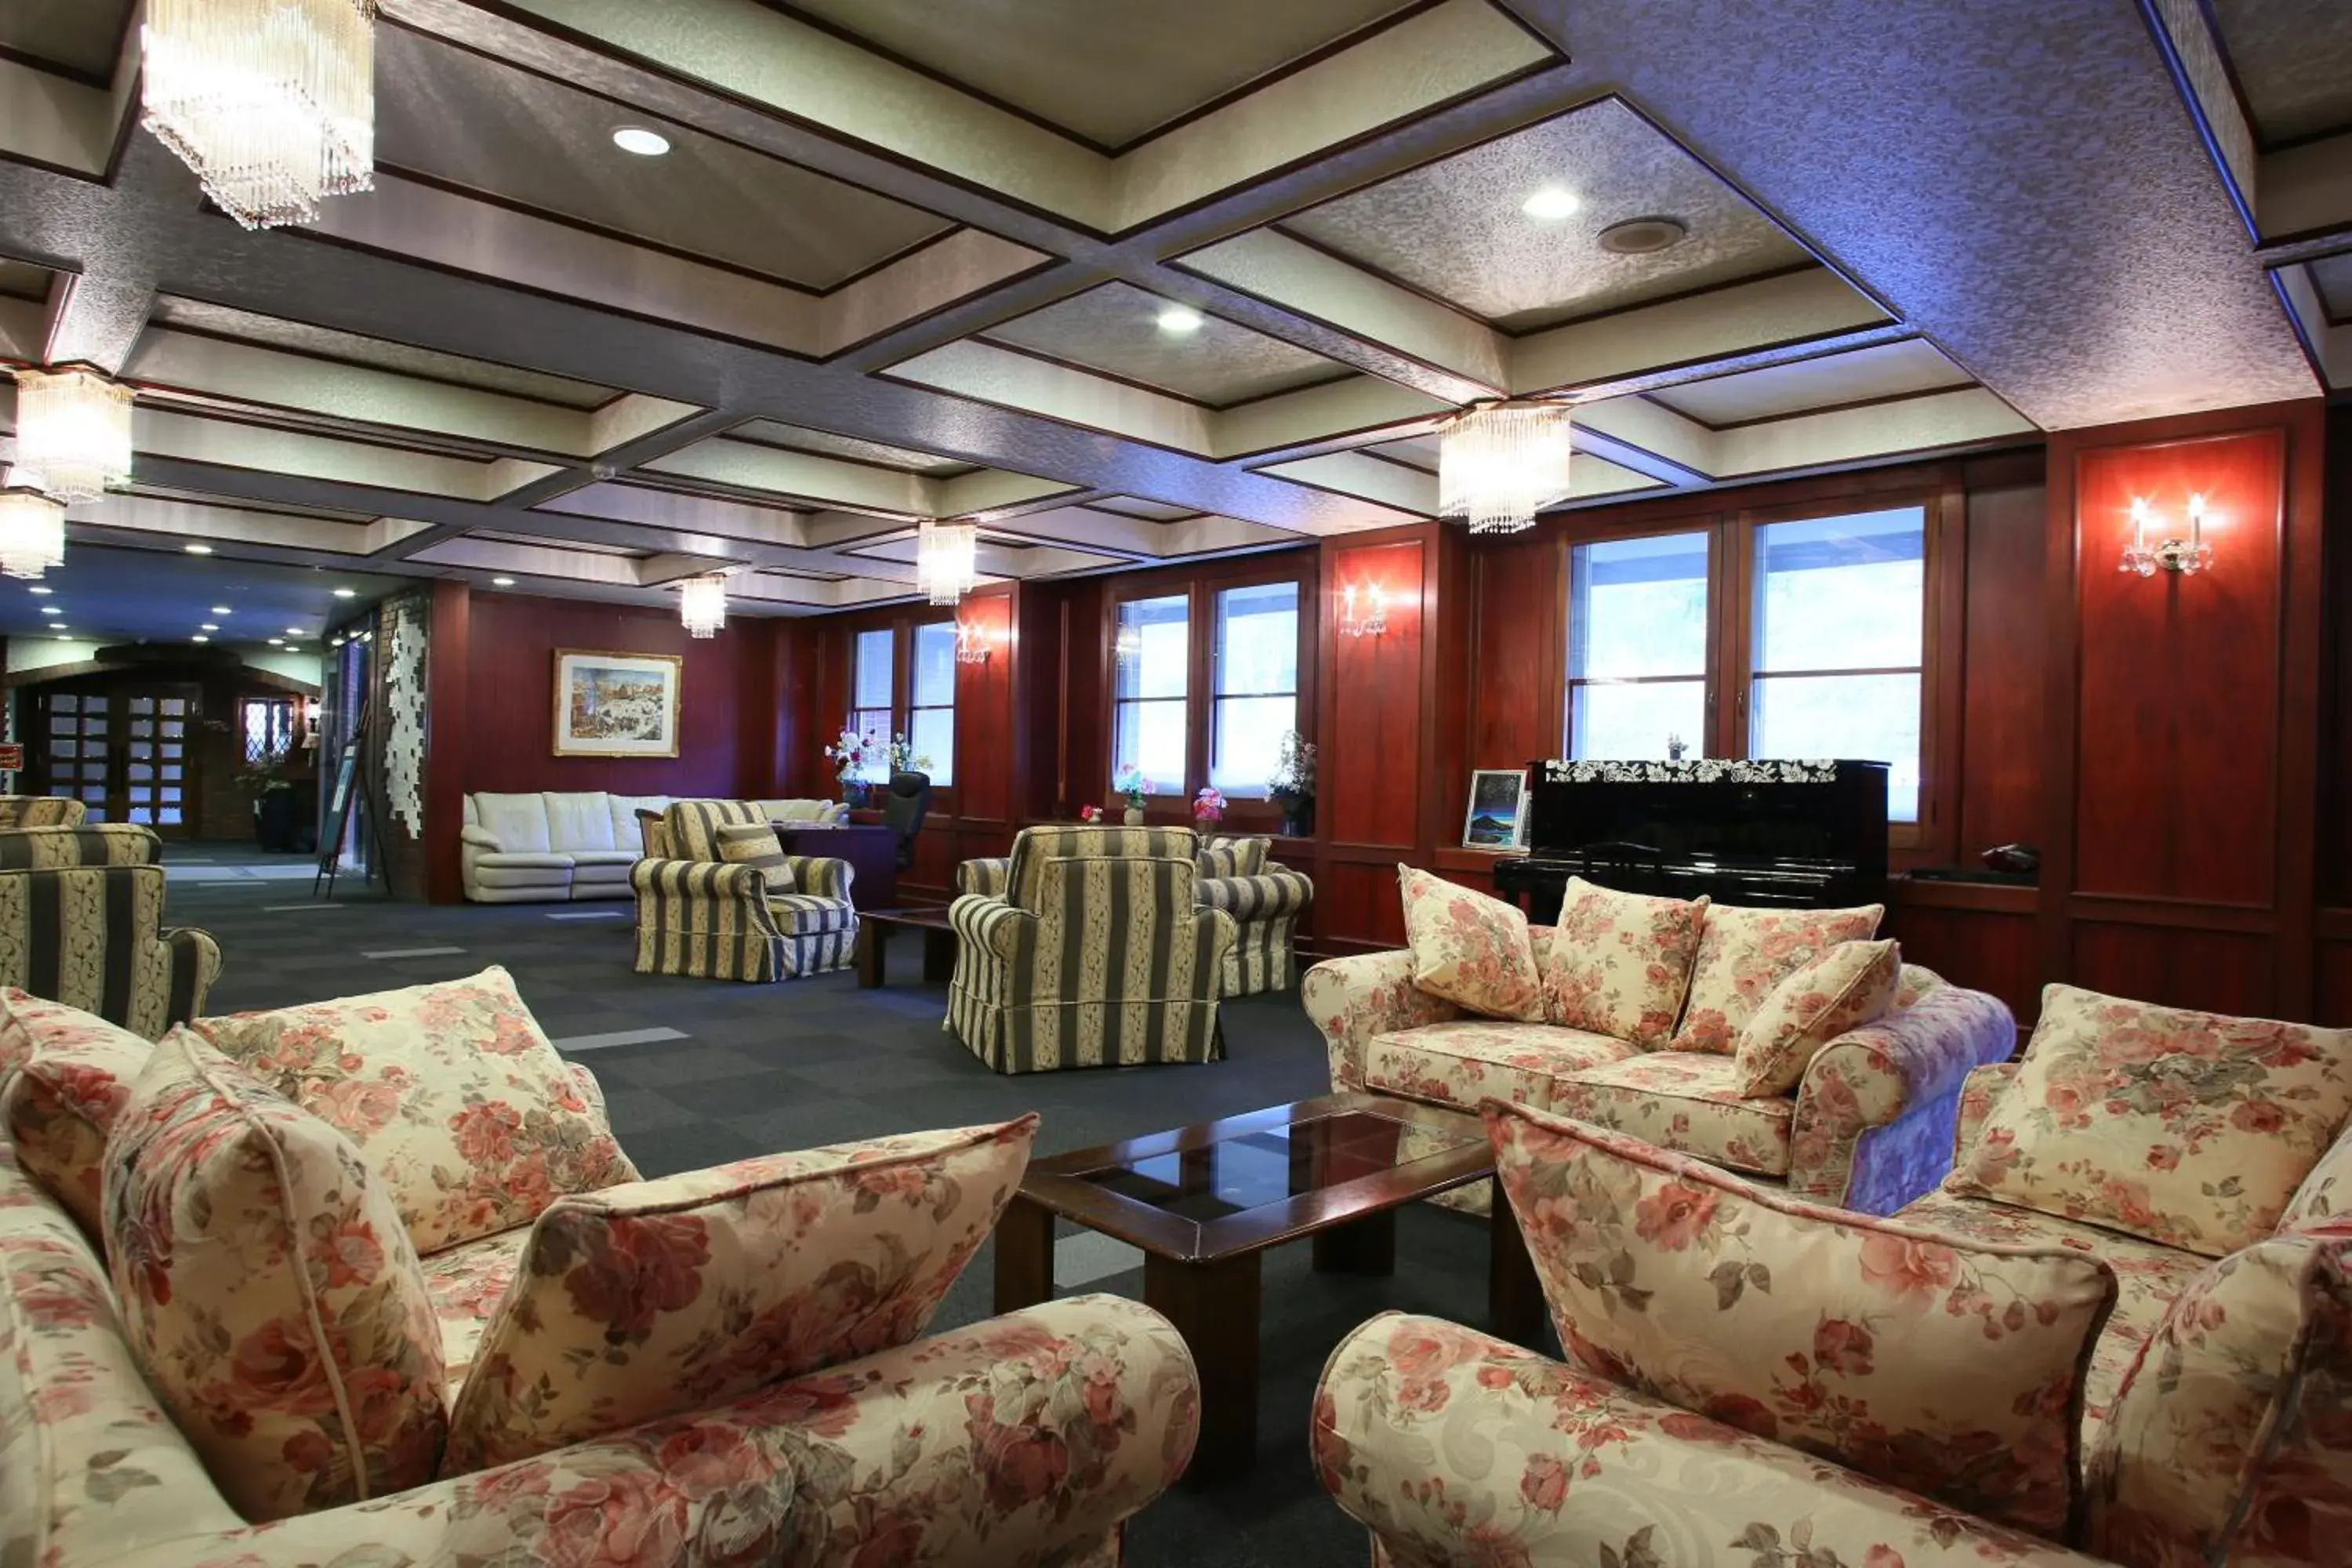 Lobby or reception in Shiga Palace Hotel